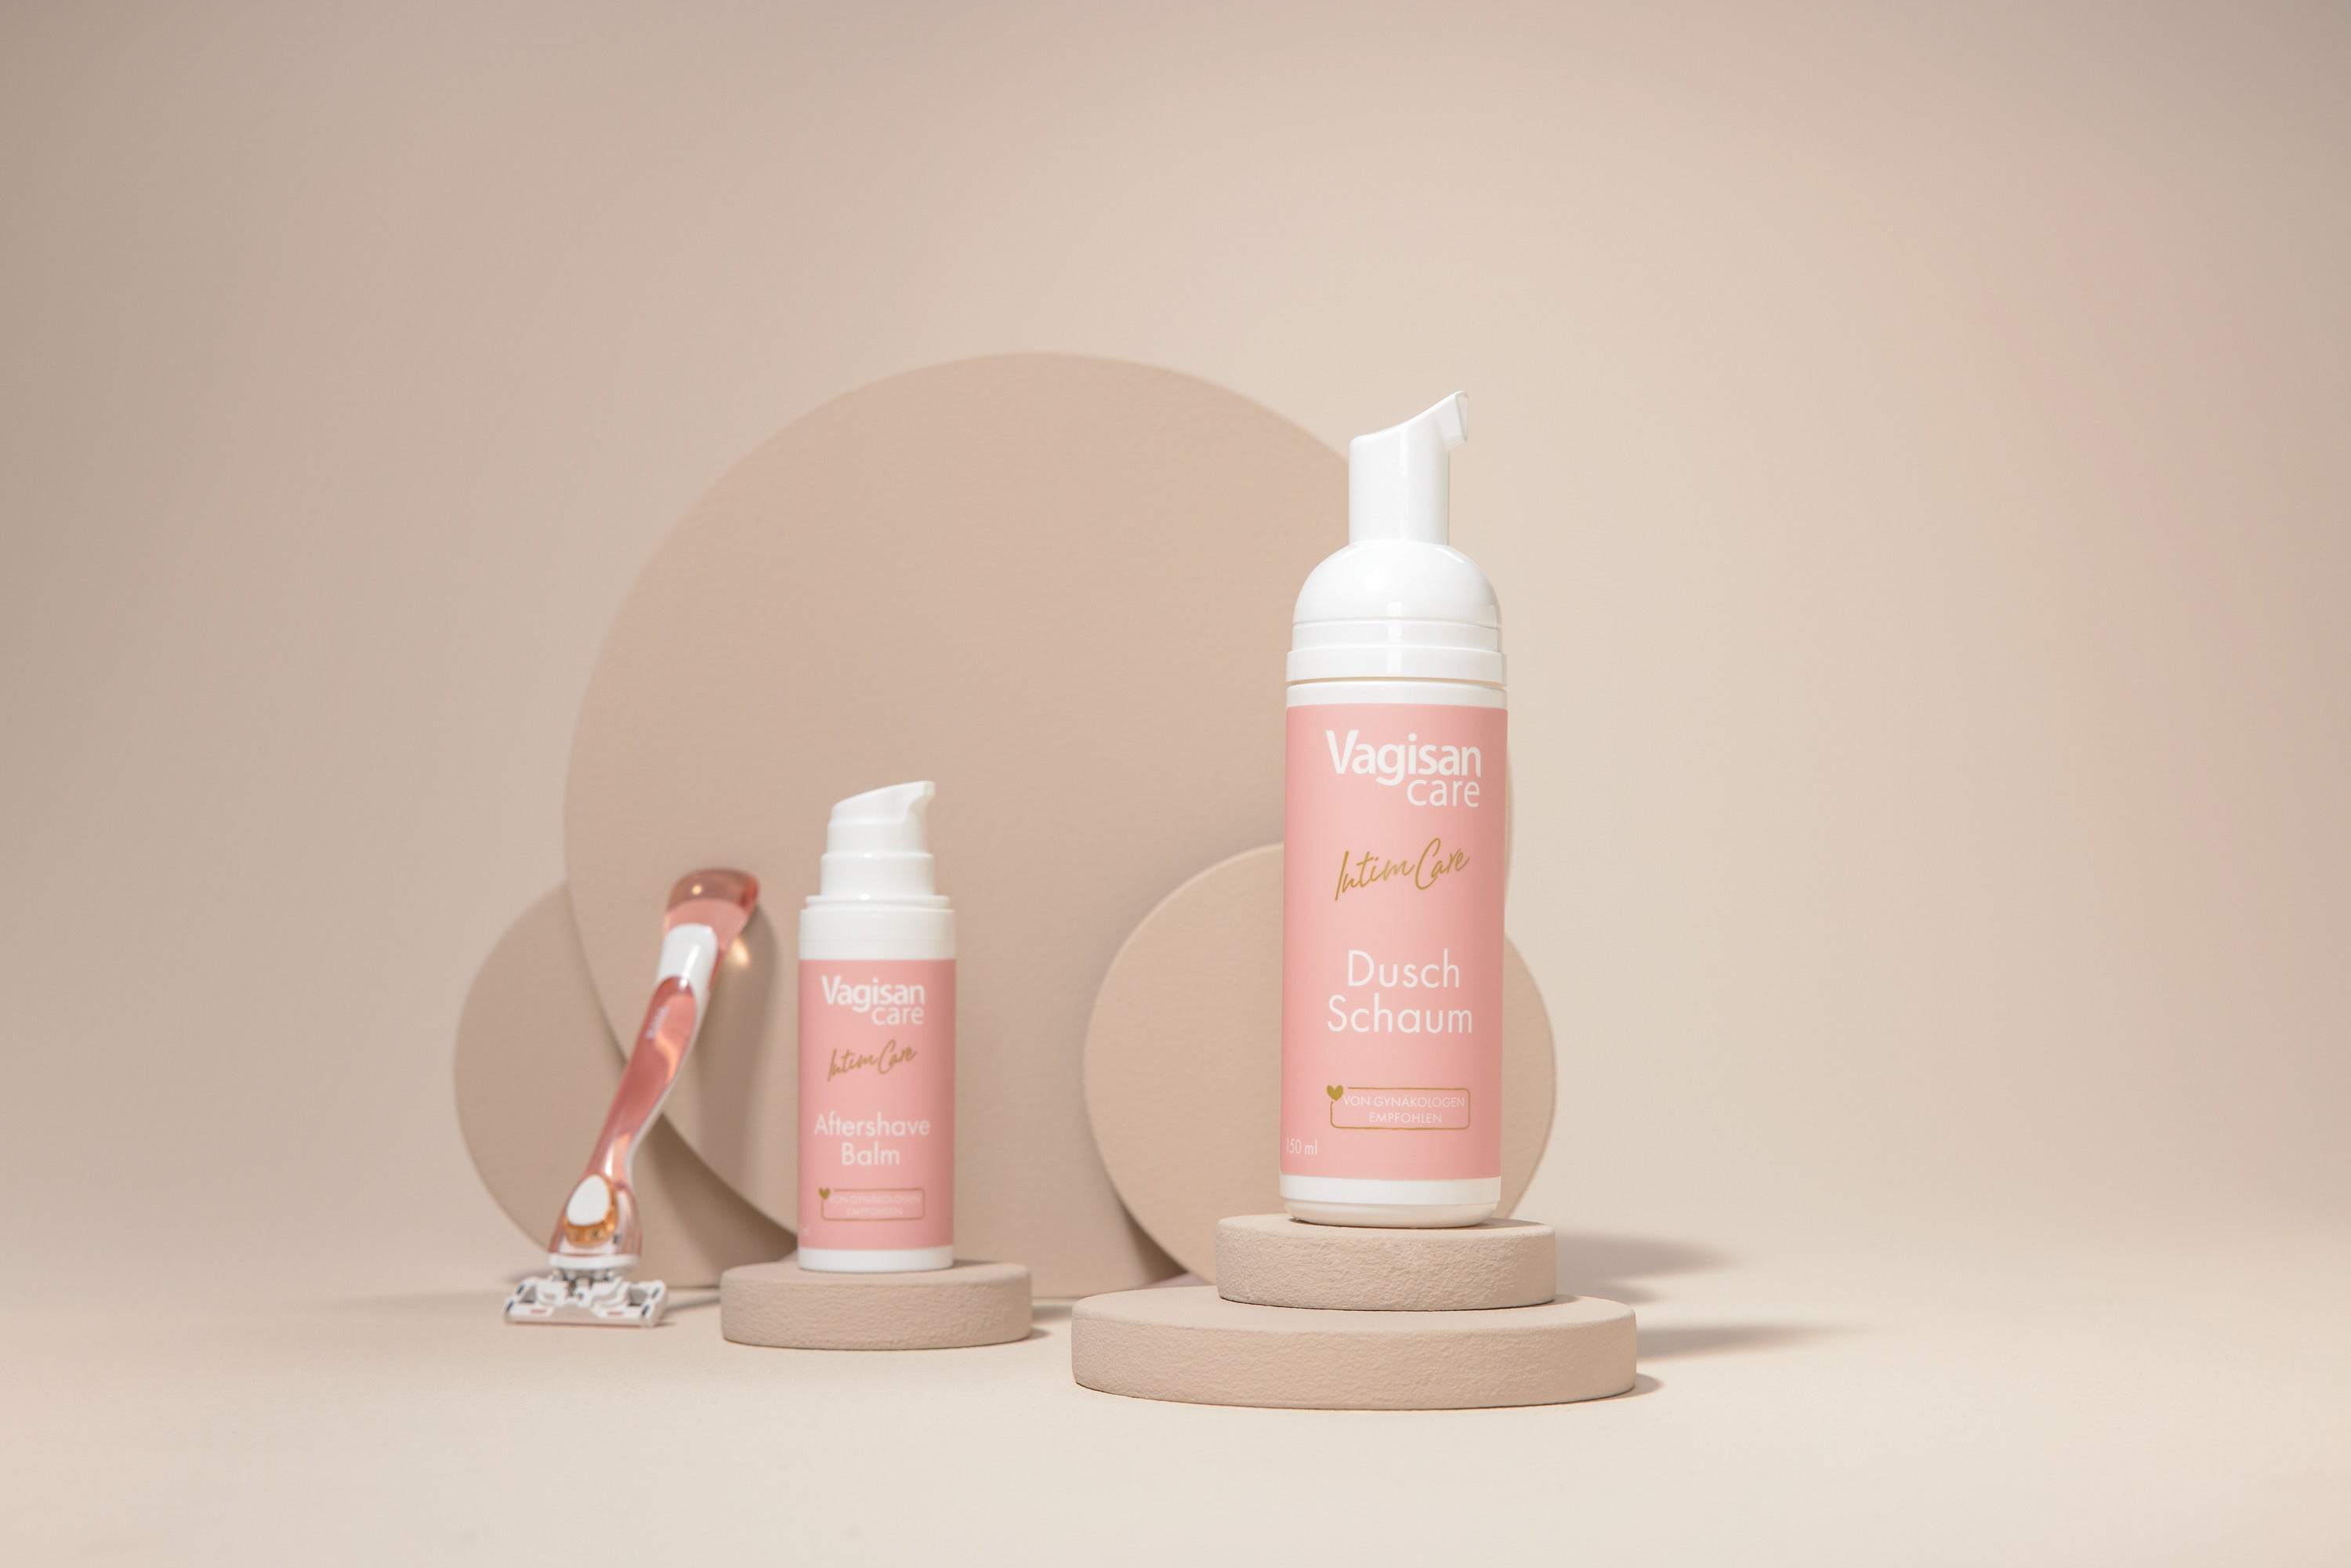 Produkt-Spender VagisanCare Dusch Schaum und VagisanCare Aftershave Balm neben einem Rasierer für die Bikinizione